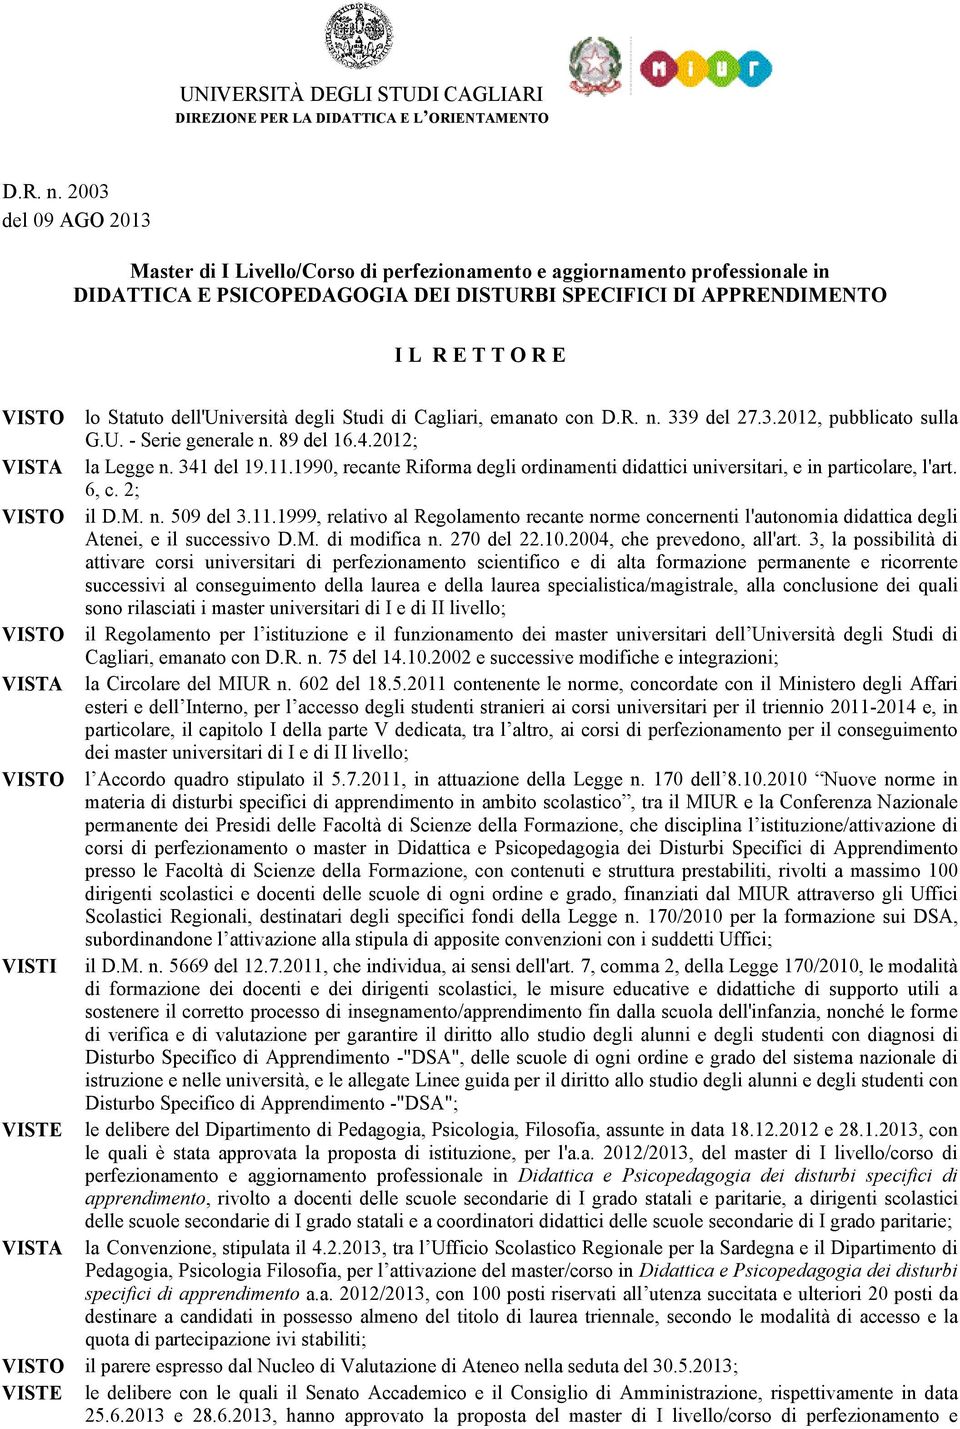 Statuto dell'università degli Studi di Cagliari, emanato con  339 del 27.3.2012, pubblicato sulla G.U. - Serie generale n. 89 del 16.4.2012; VISTA la Legge n. 341 del 19.11.